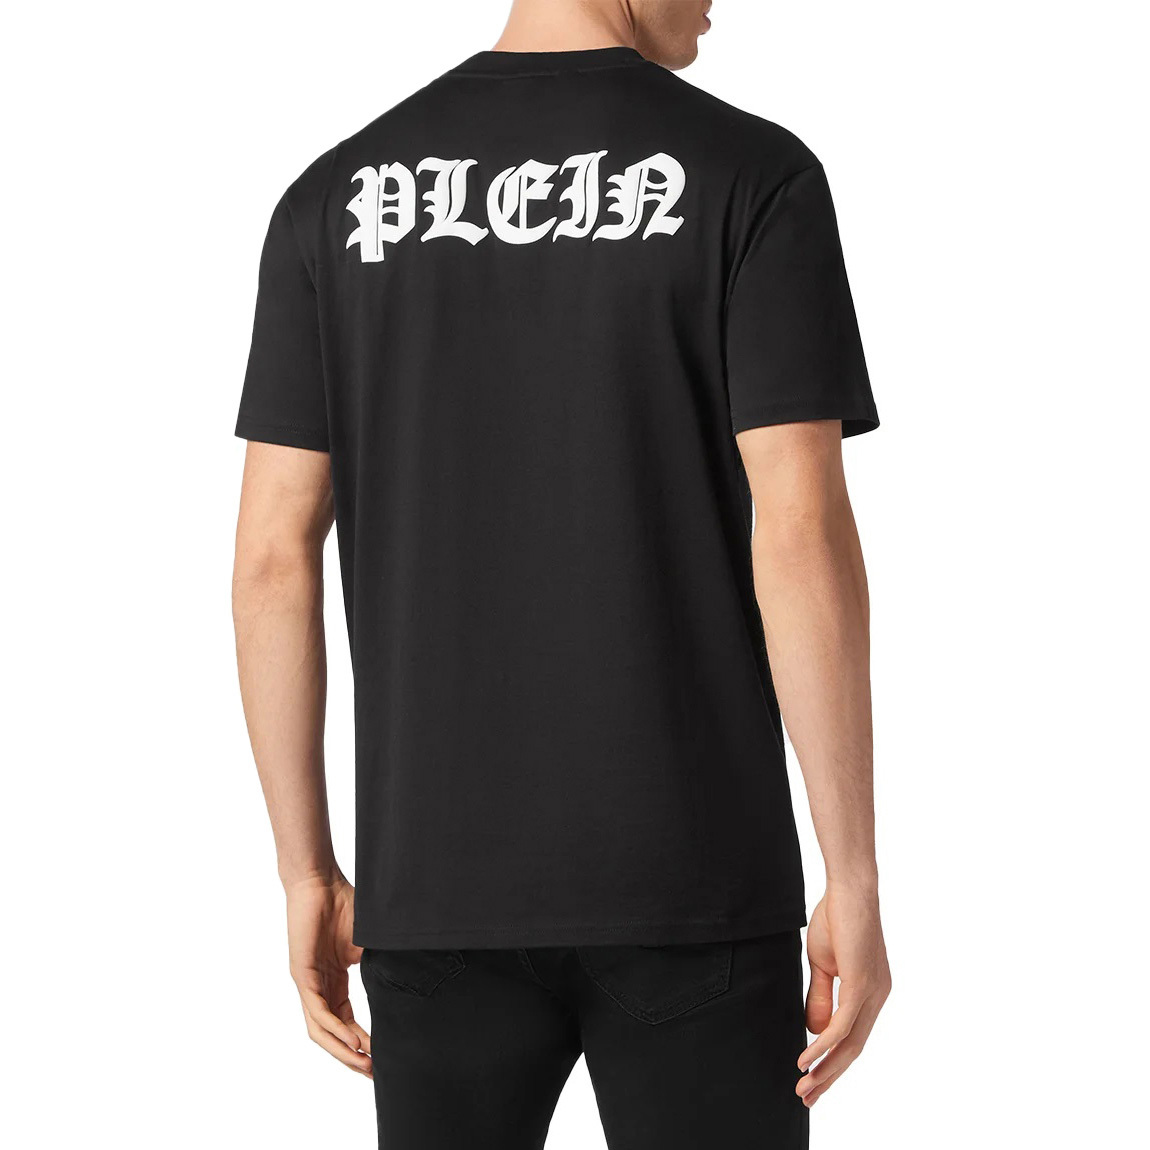 2022人気の 送料無料 1 S size 半袖 ロゴ カットソー Tシャツ ブラック